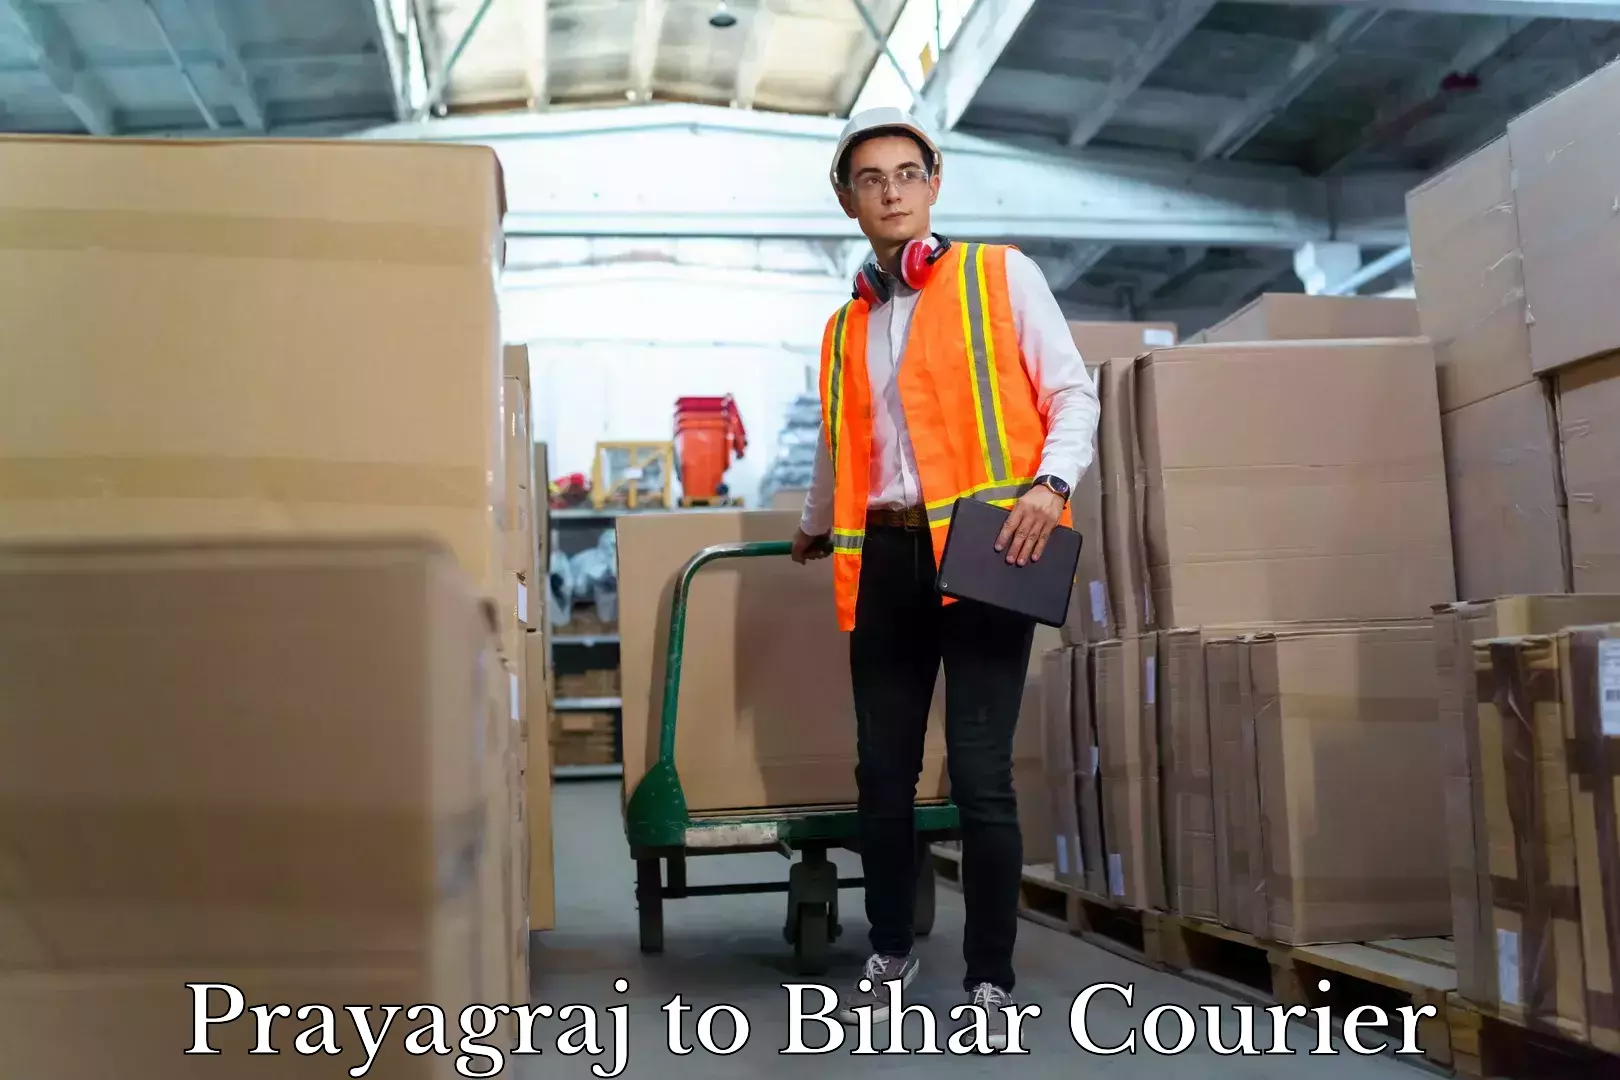 Household goods delivery in Prayagraj to Bihar